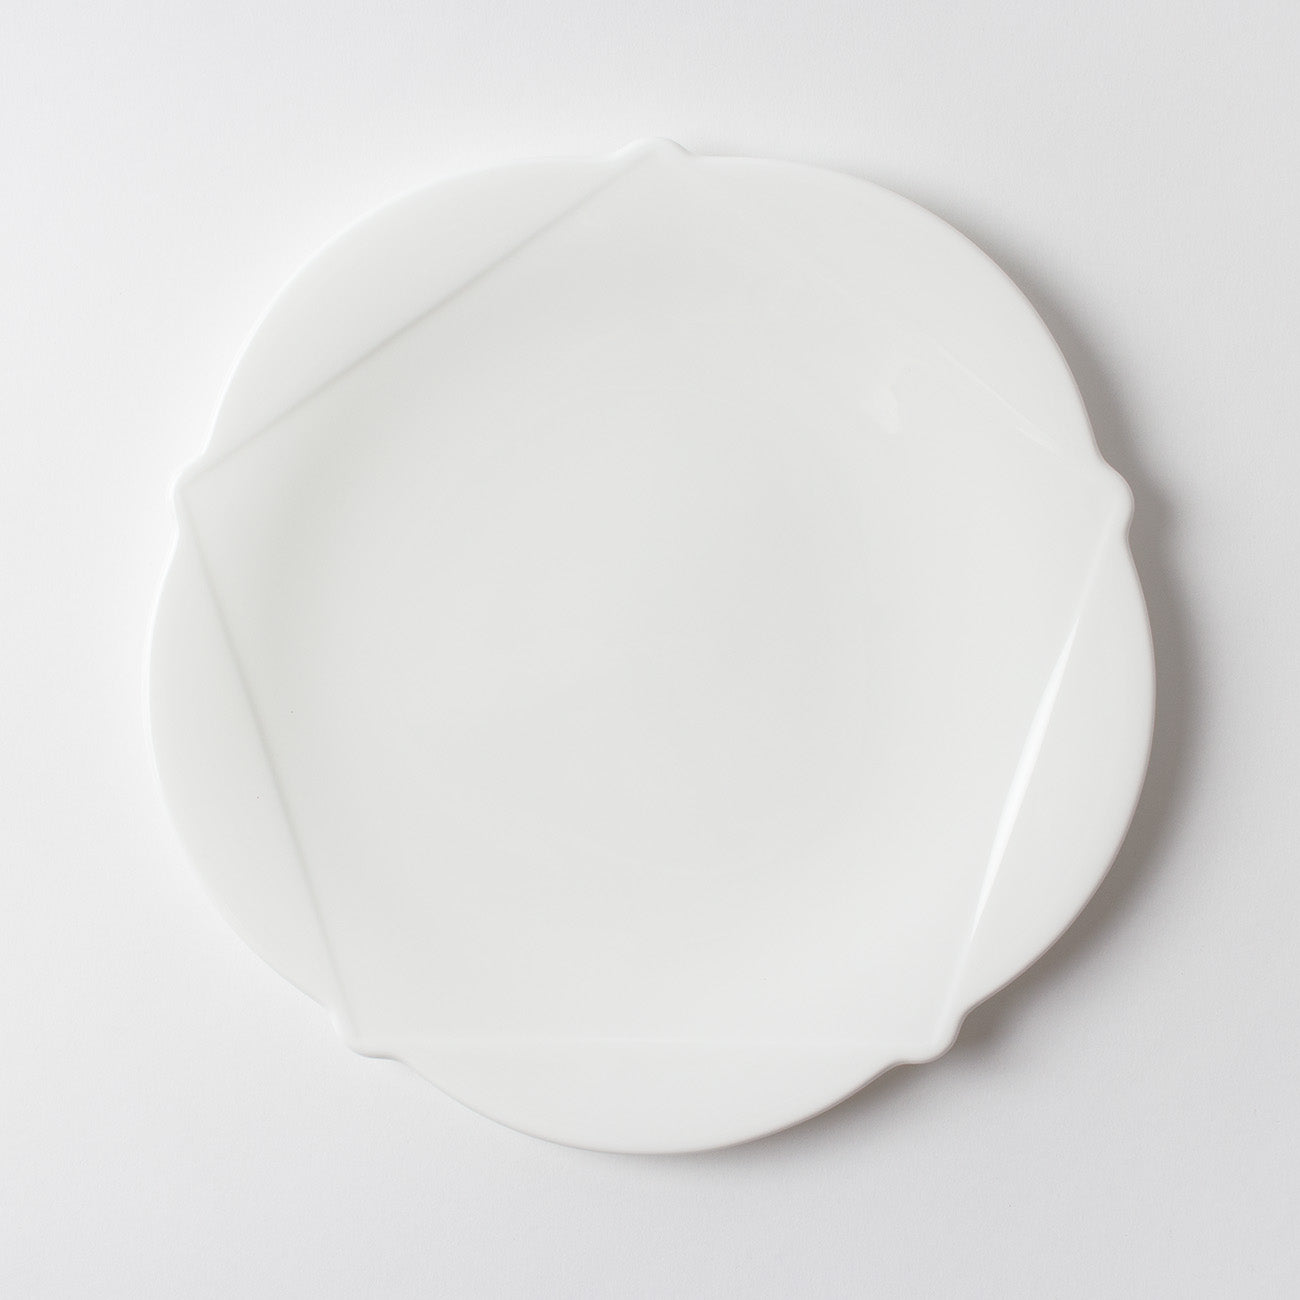 【復興支援商品】26.5cmアラカルト皿